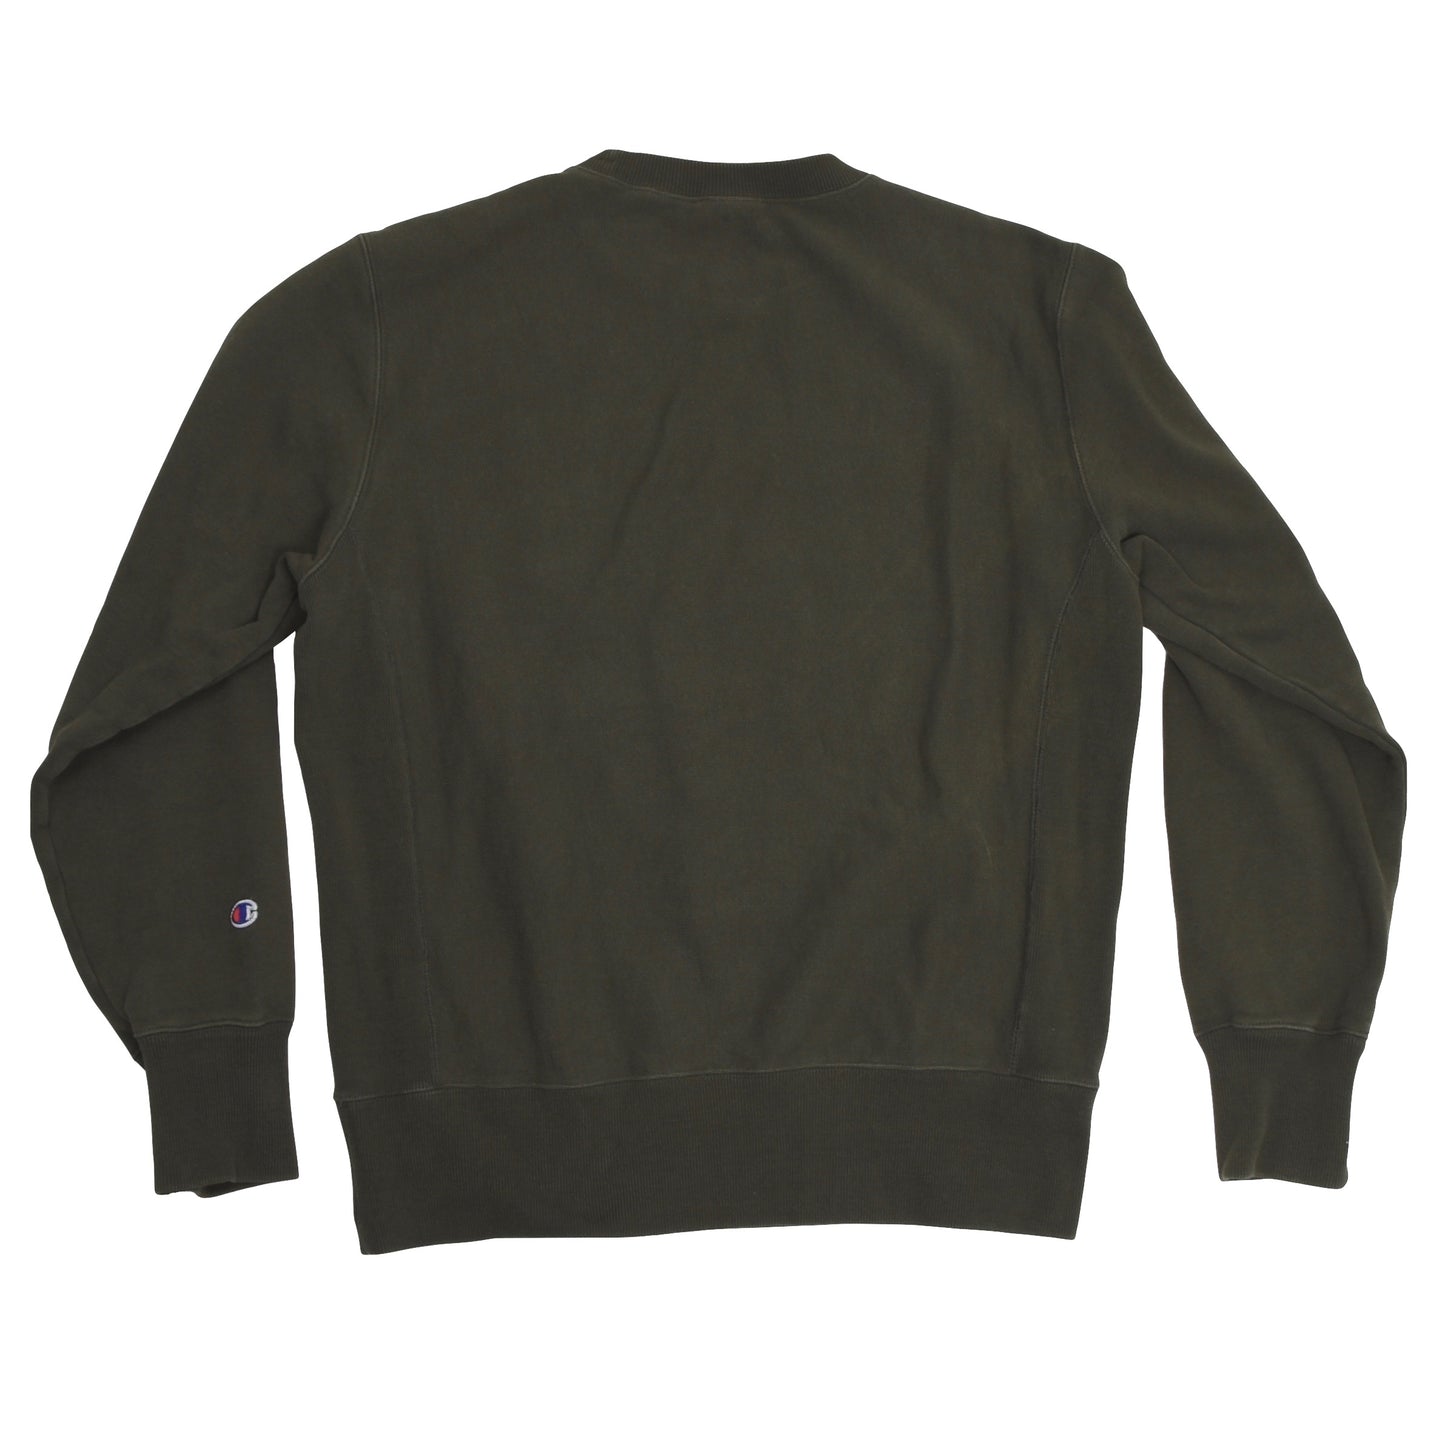 Vintage Champion Reverse Weave Sweatshirt Größe L - grün